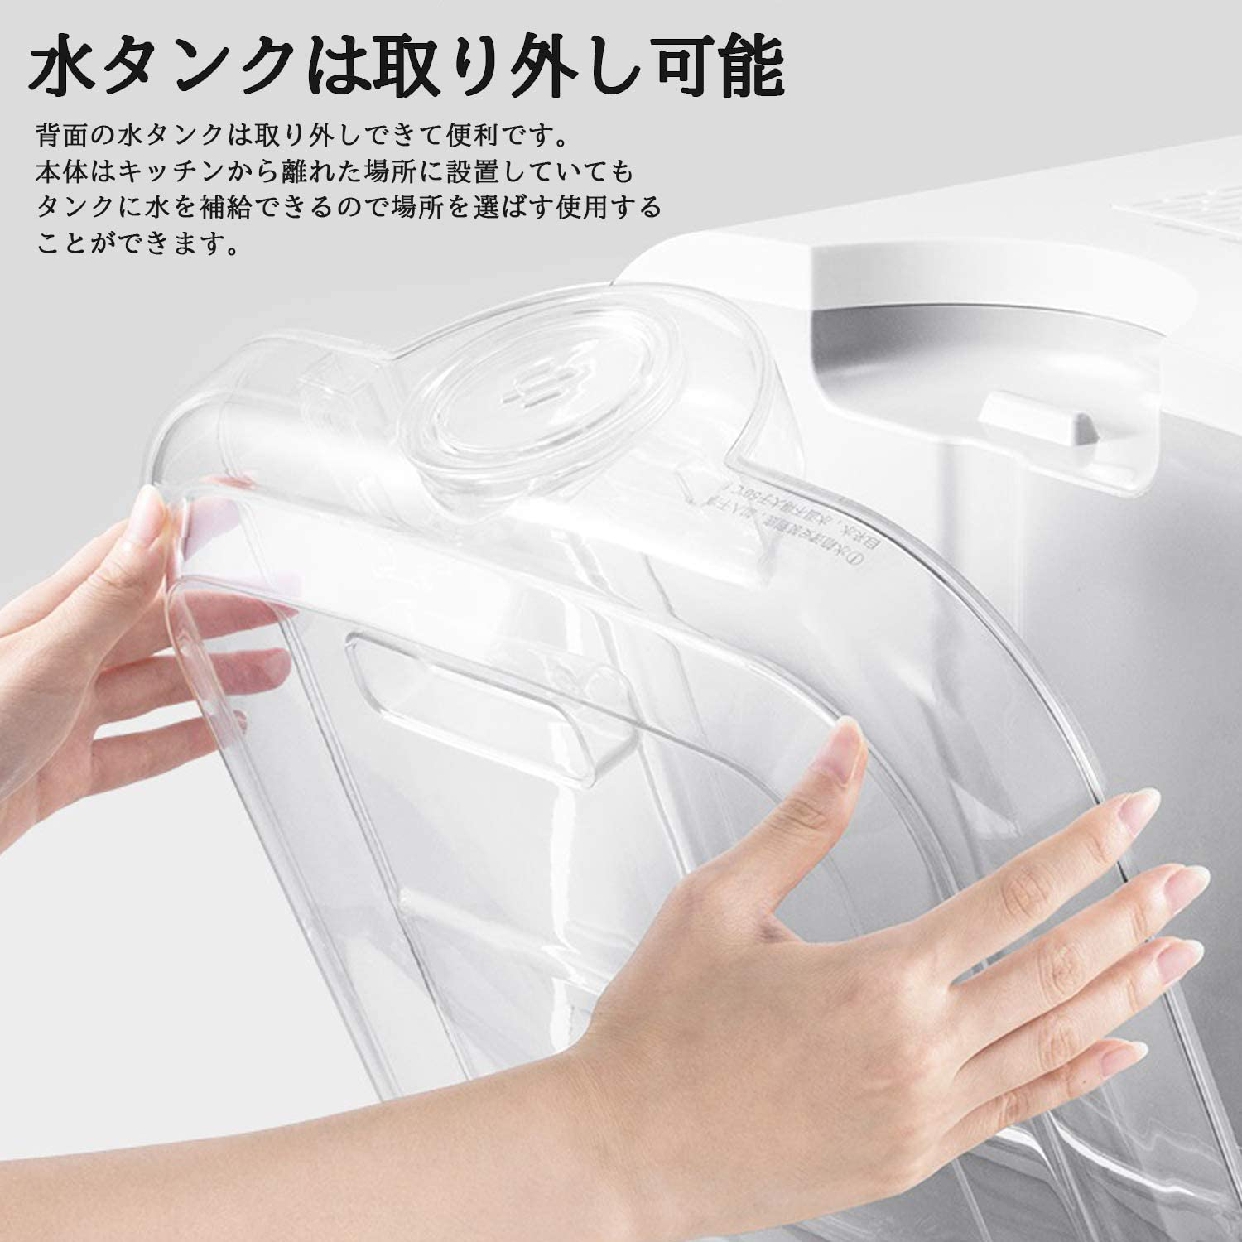 TDP(ティーディーピー) 食器洗い乾燥機 g004(ホワイト)の商品画像3 